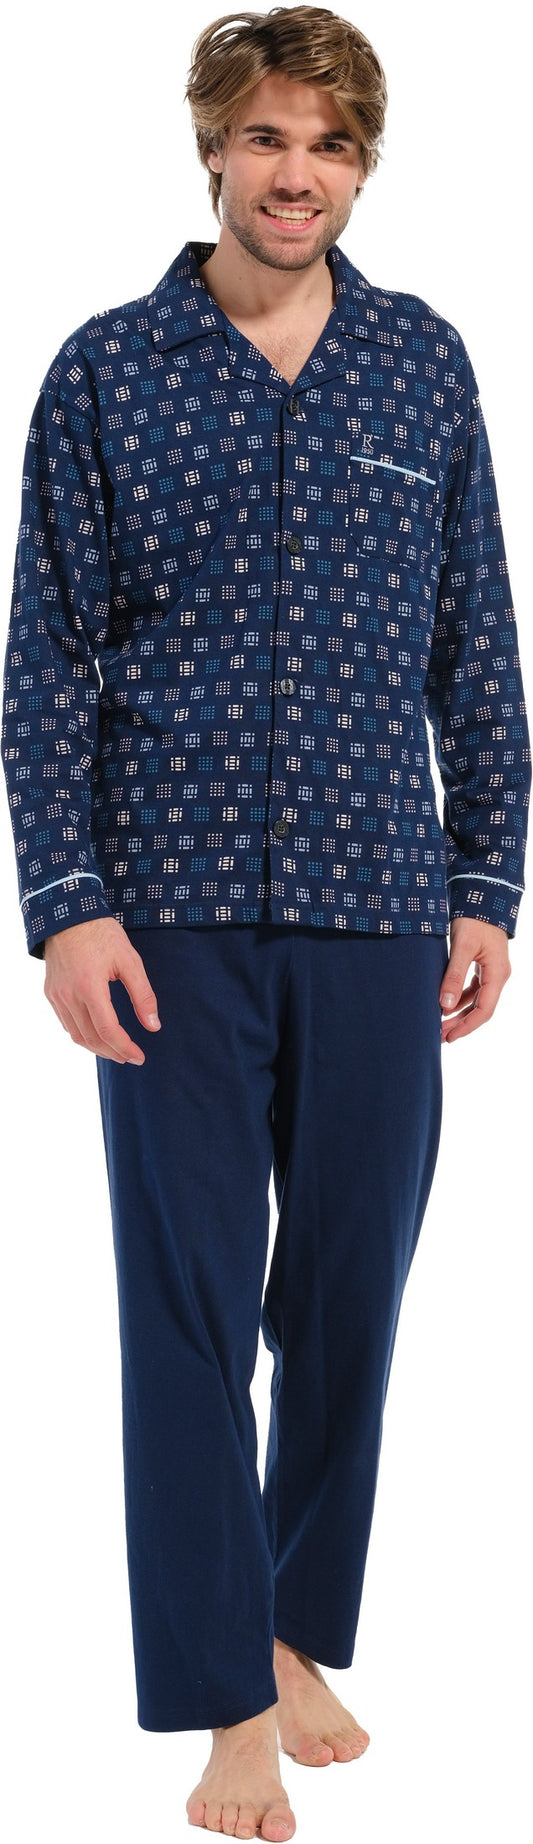 Pyjama 27232-716-6 526 blauw